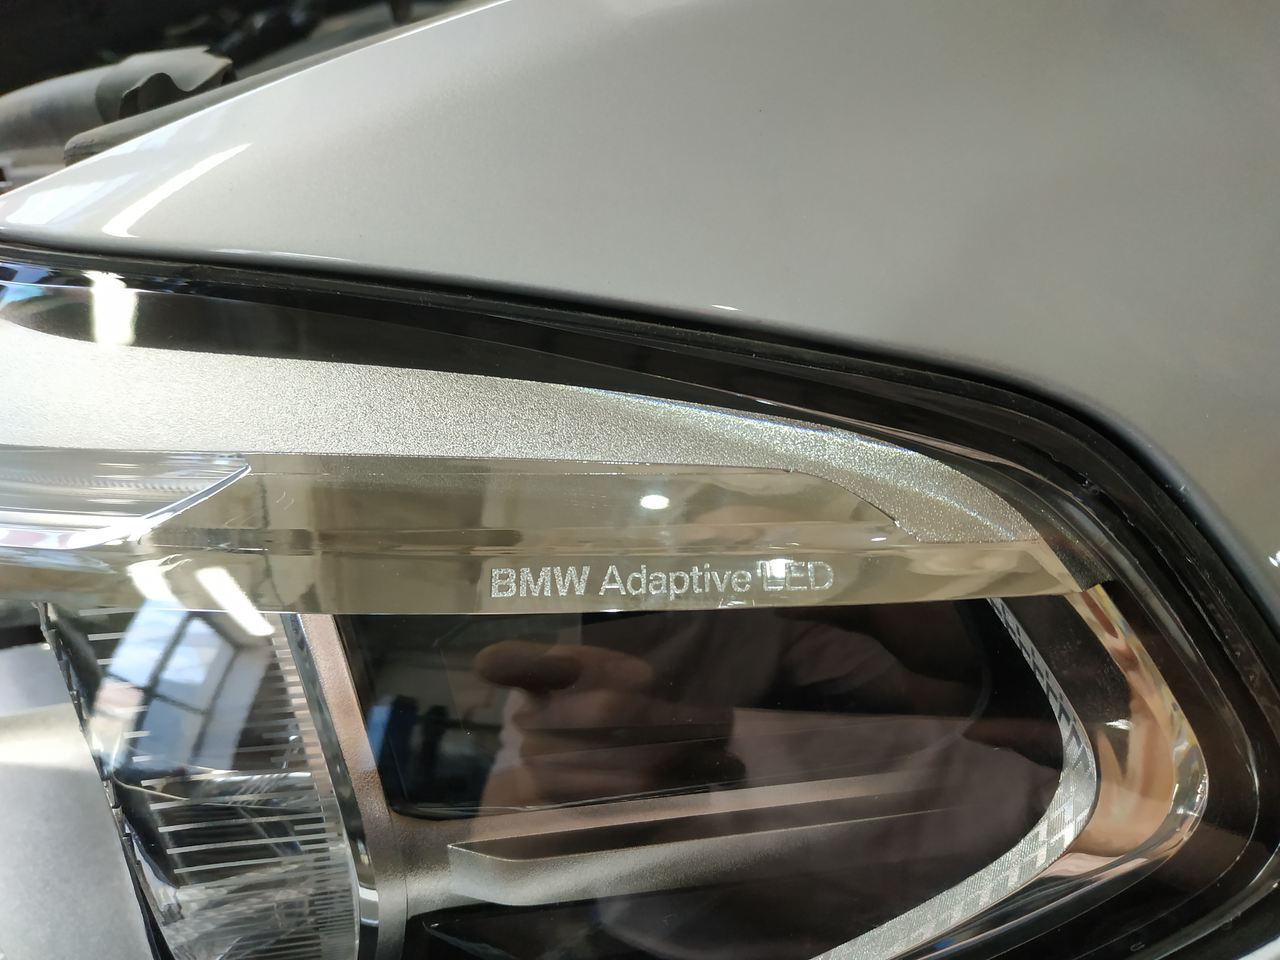 BMW Adaptive LED